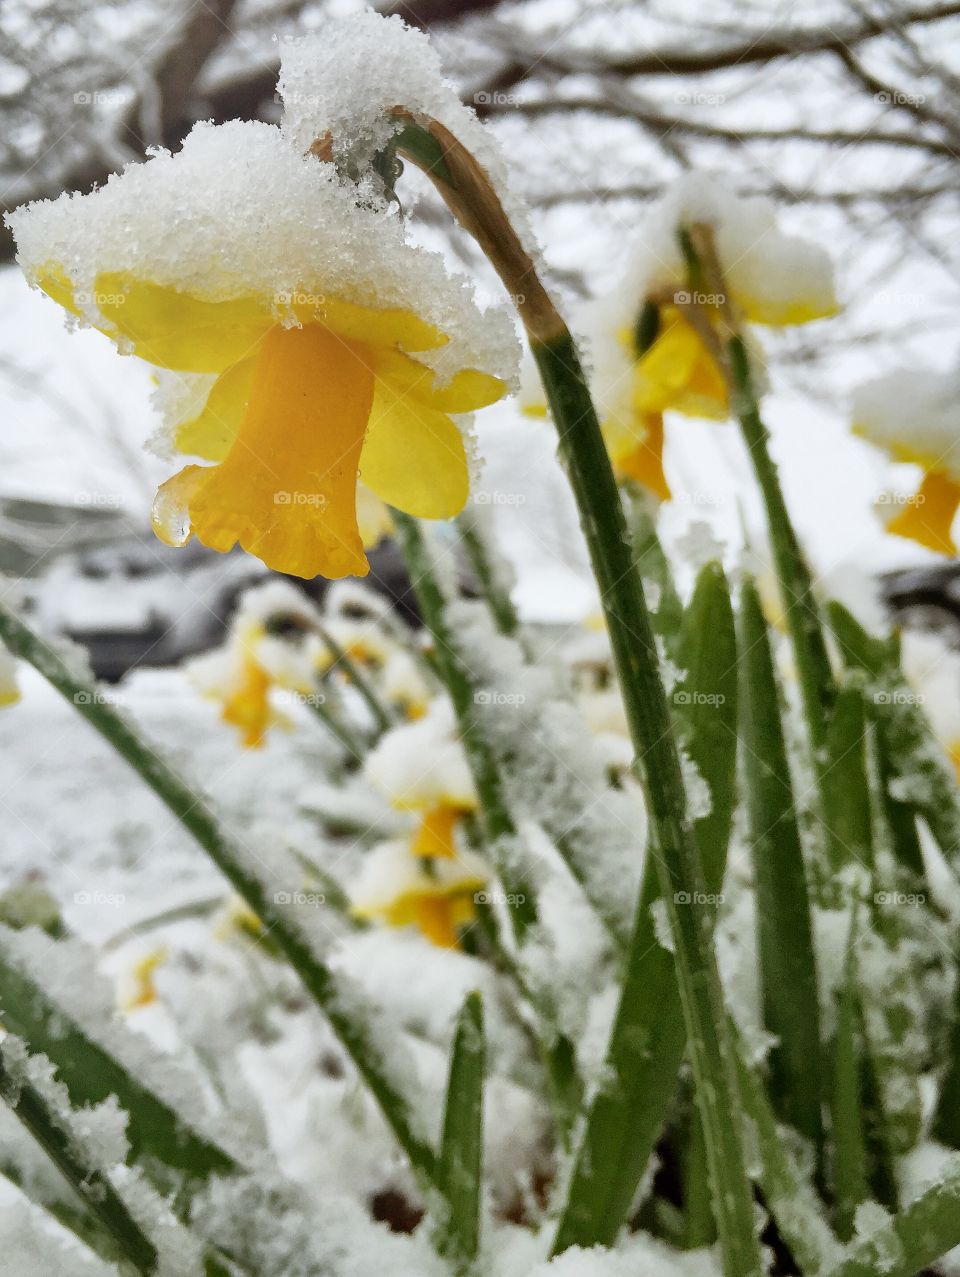 Frozen daffodil flower in winter